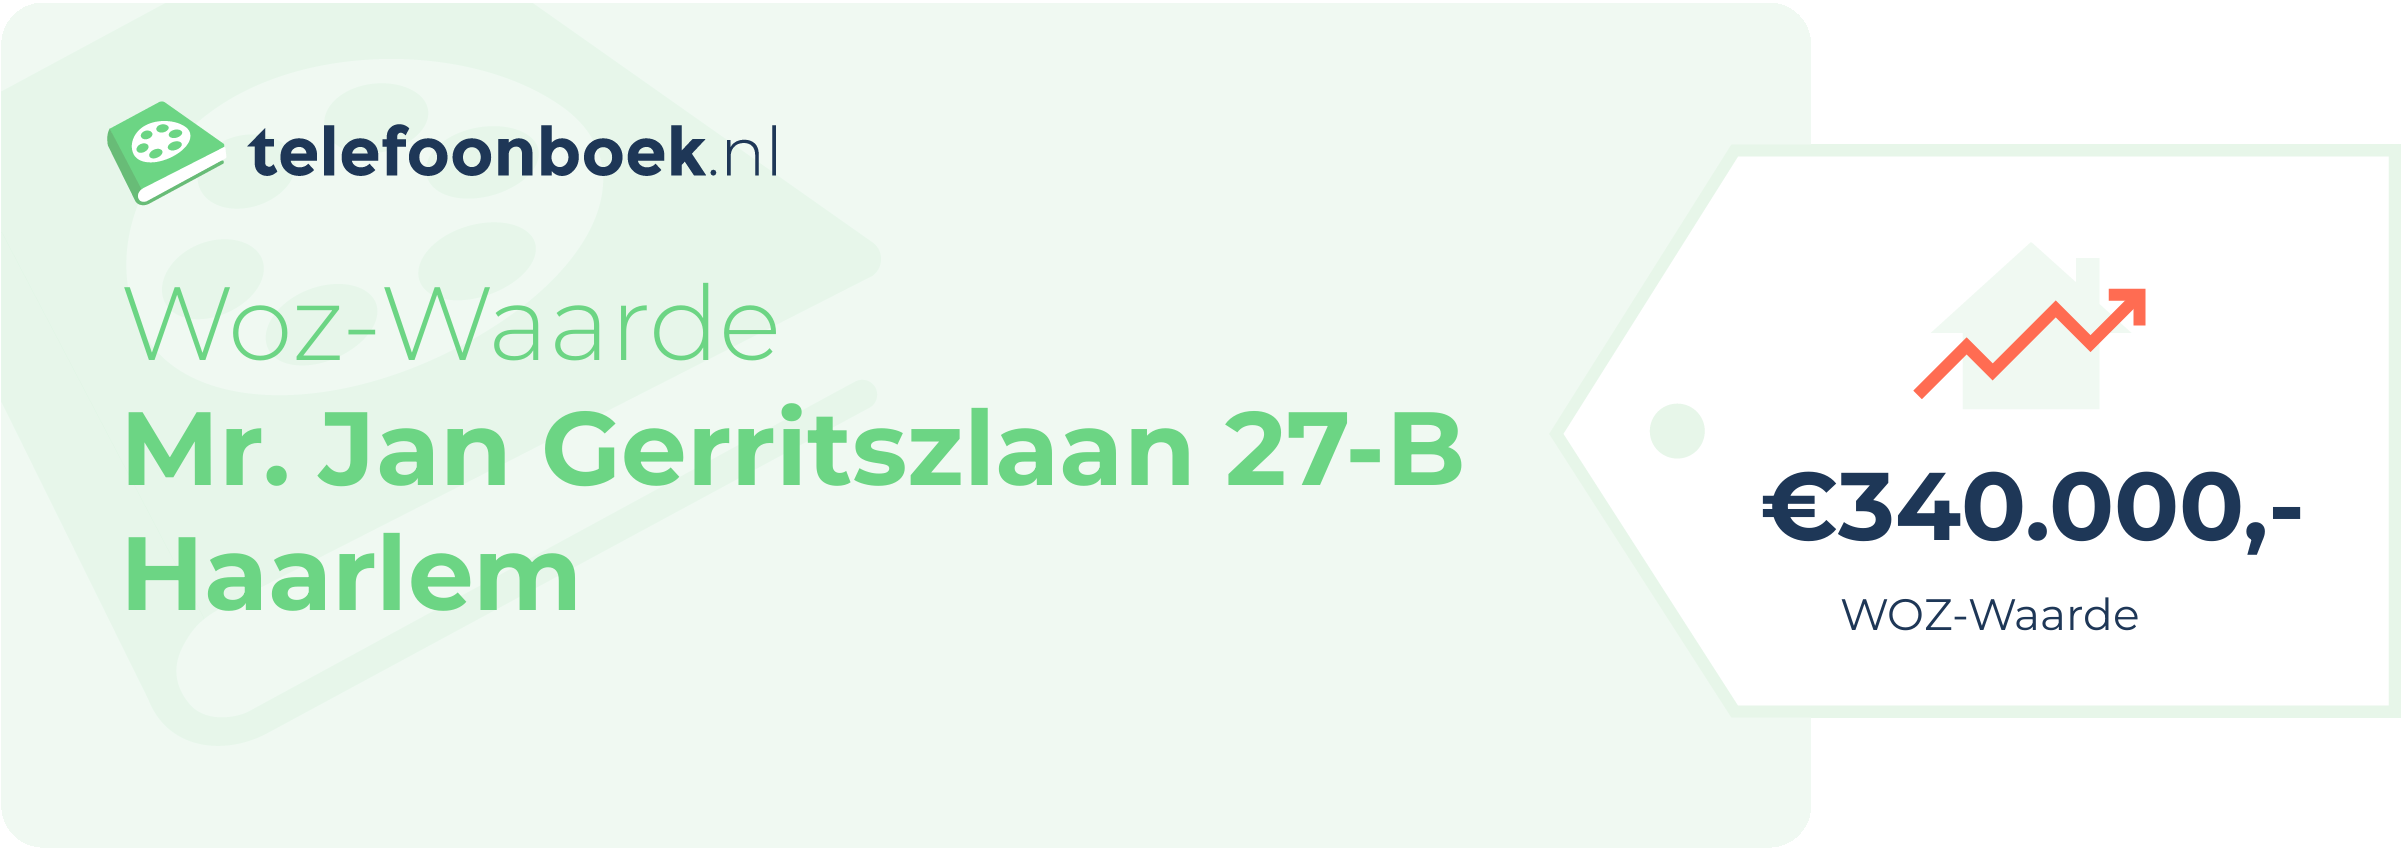 WOZ-waarde Mr. Jan Gerritszlaan 27-B Haarlem